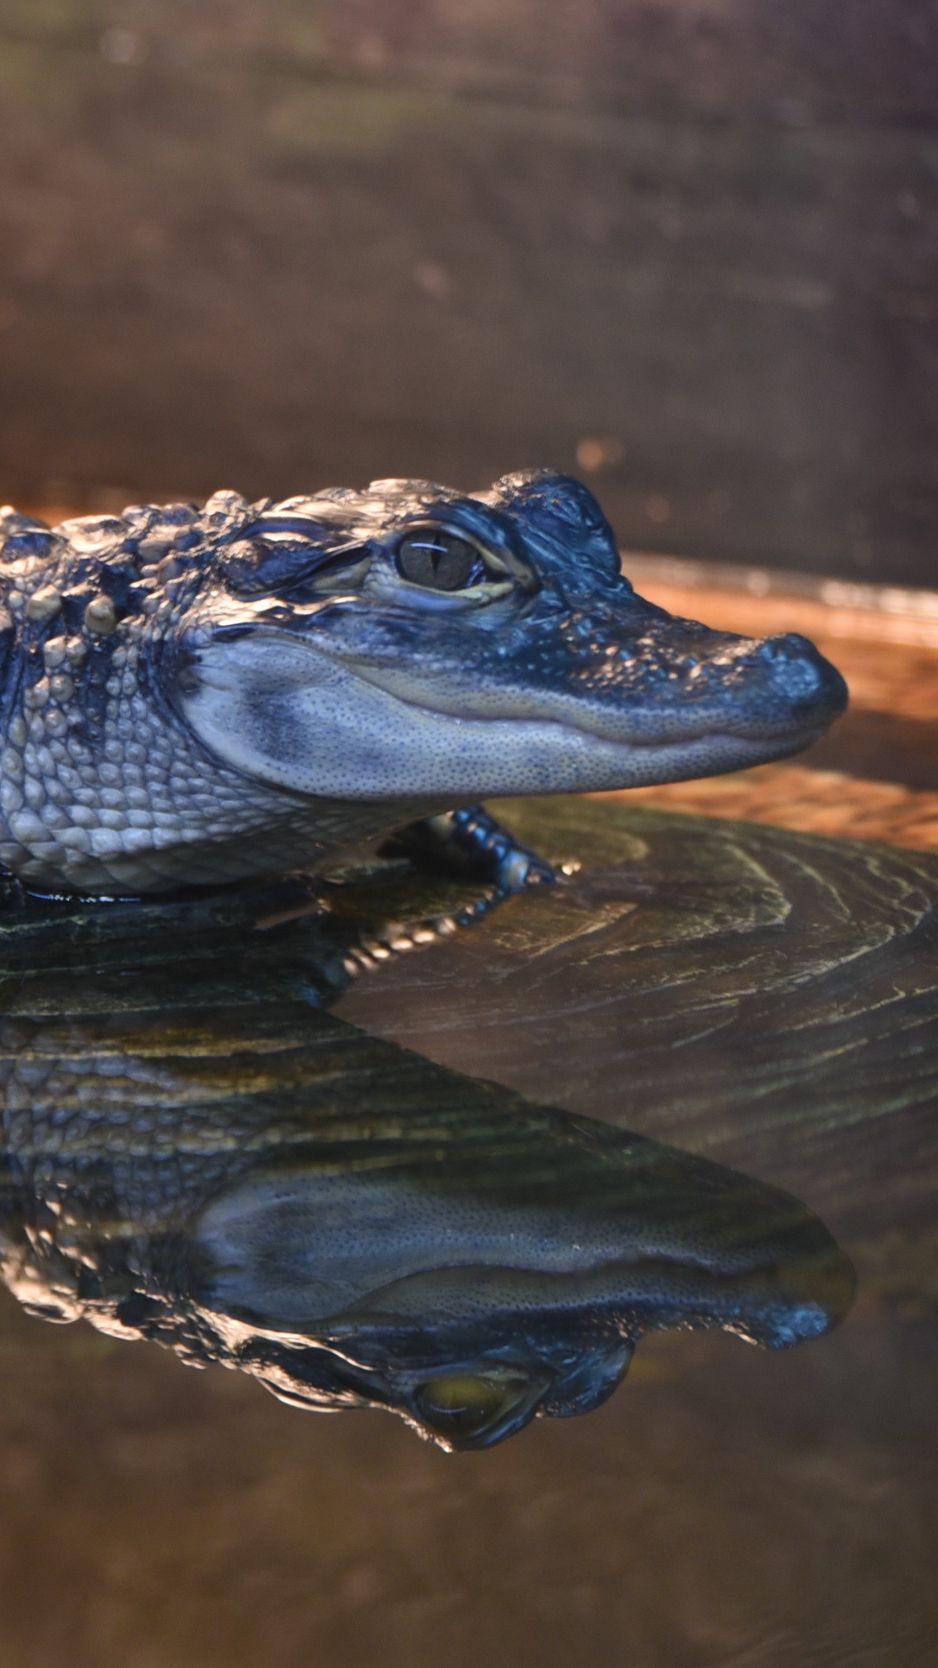 Wallpaper Alligator Crocodile Reptile